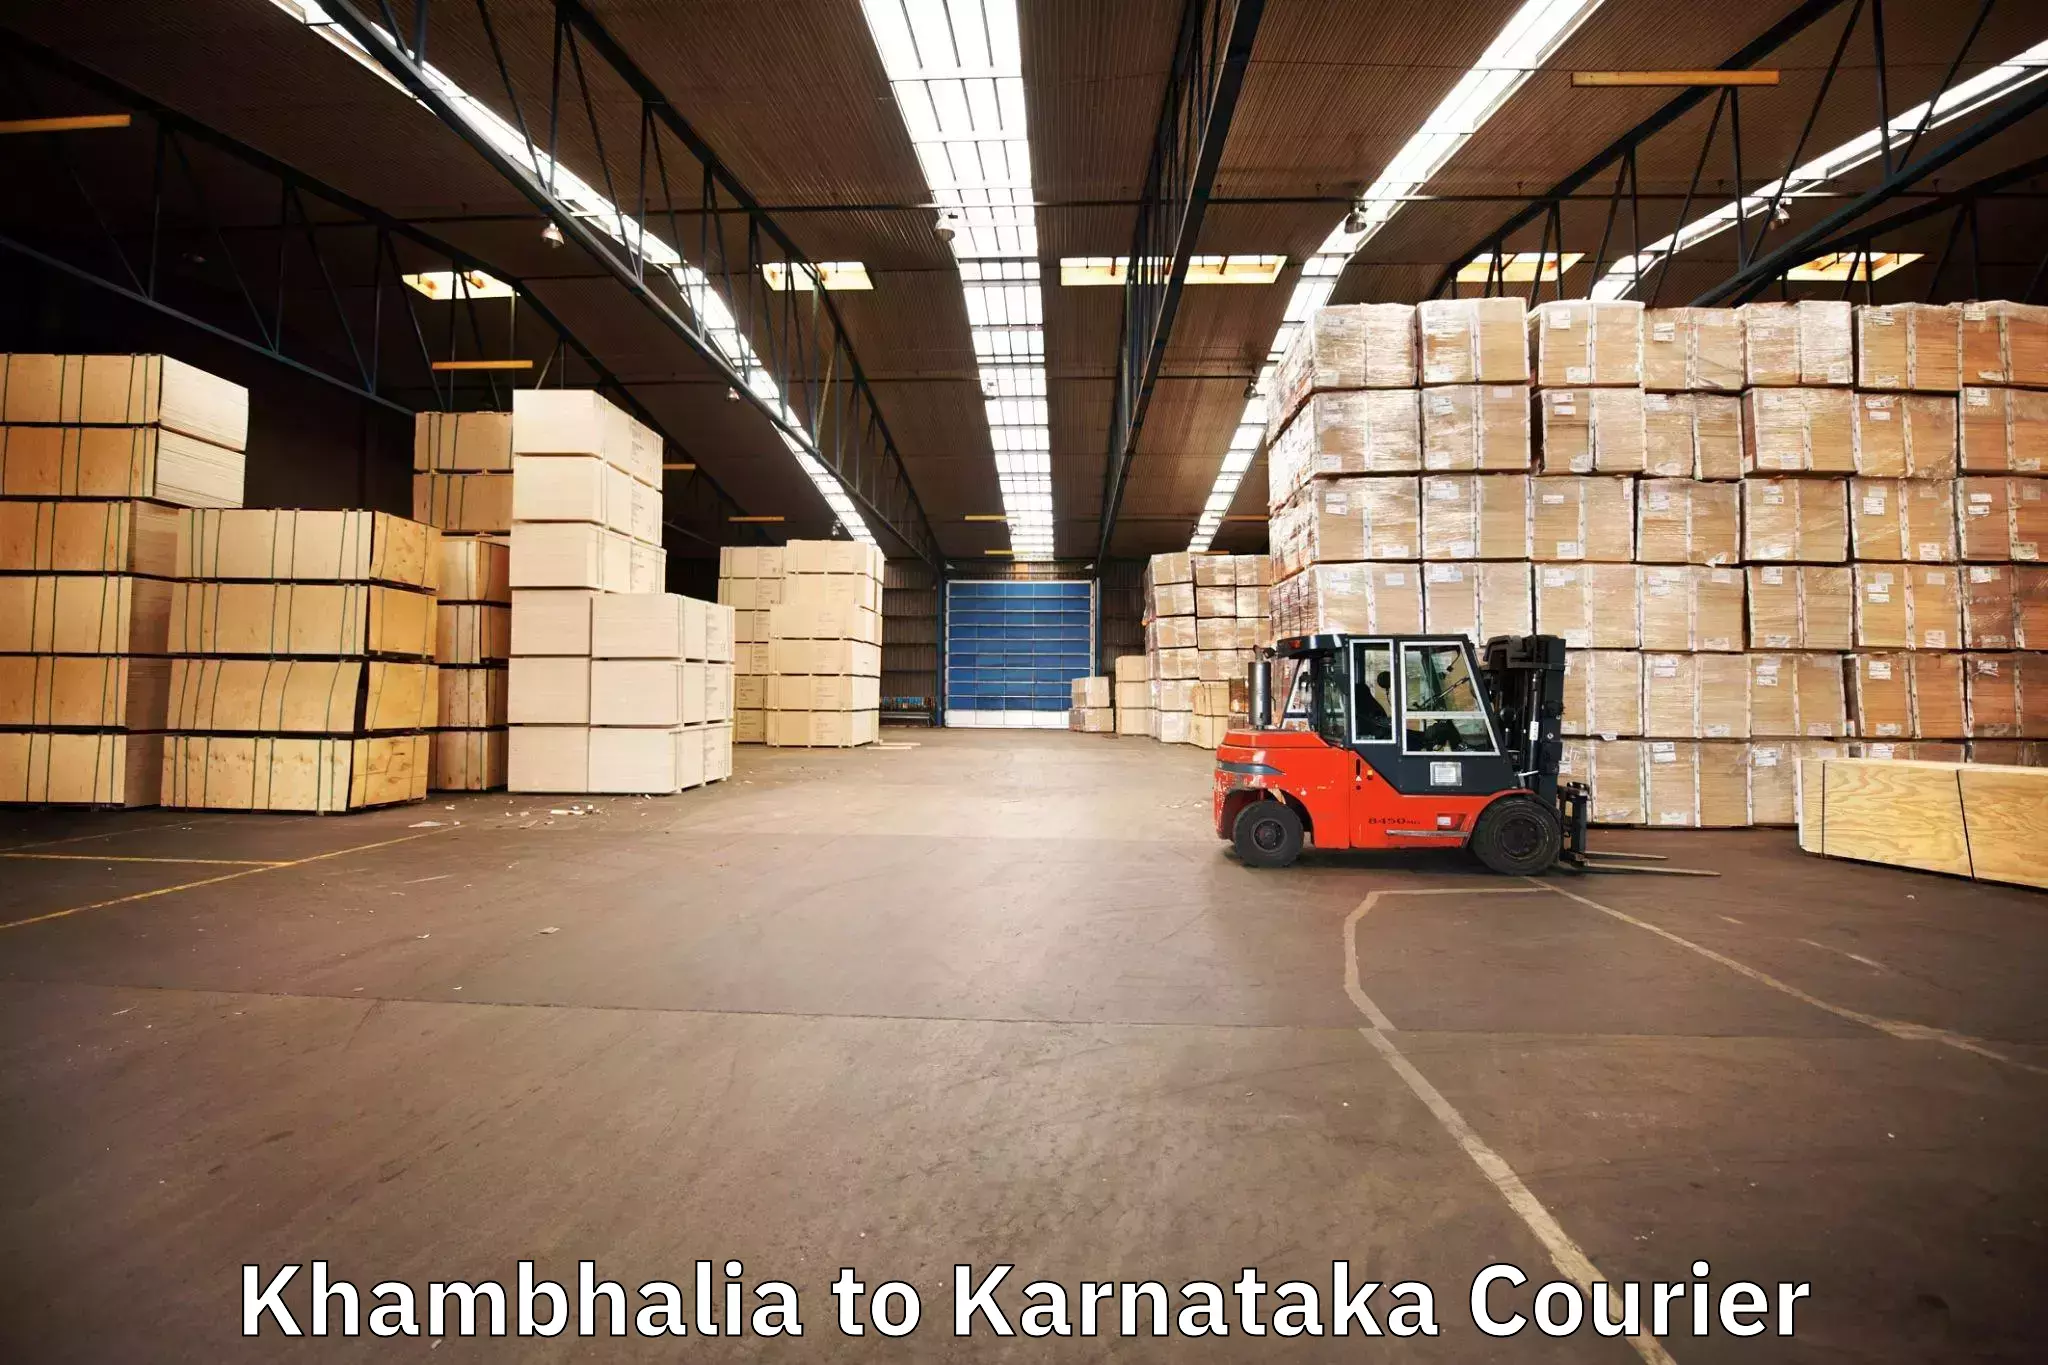 Long-distance moving services Khambhalia to Bangalore